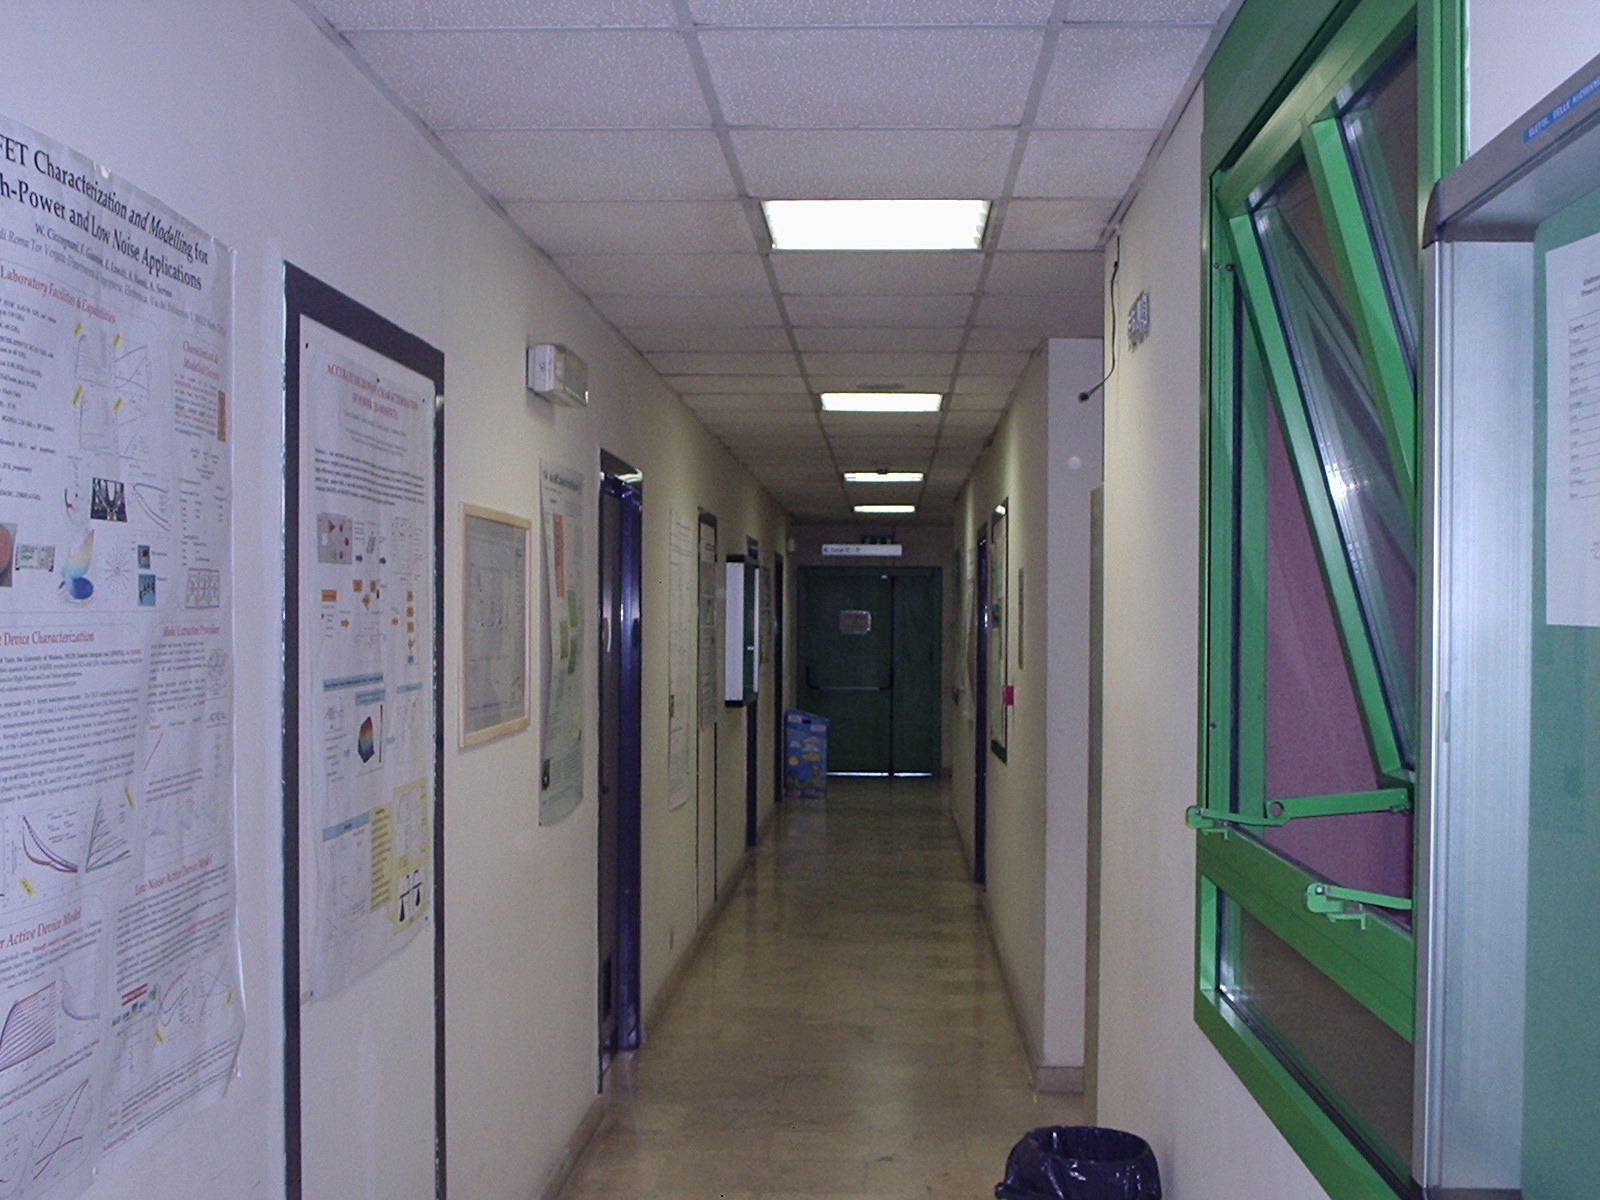 disp, first floor, corridor